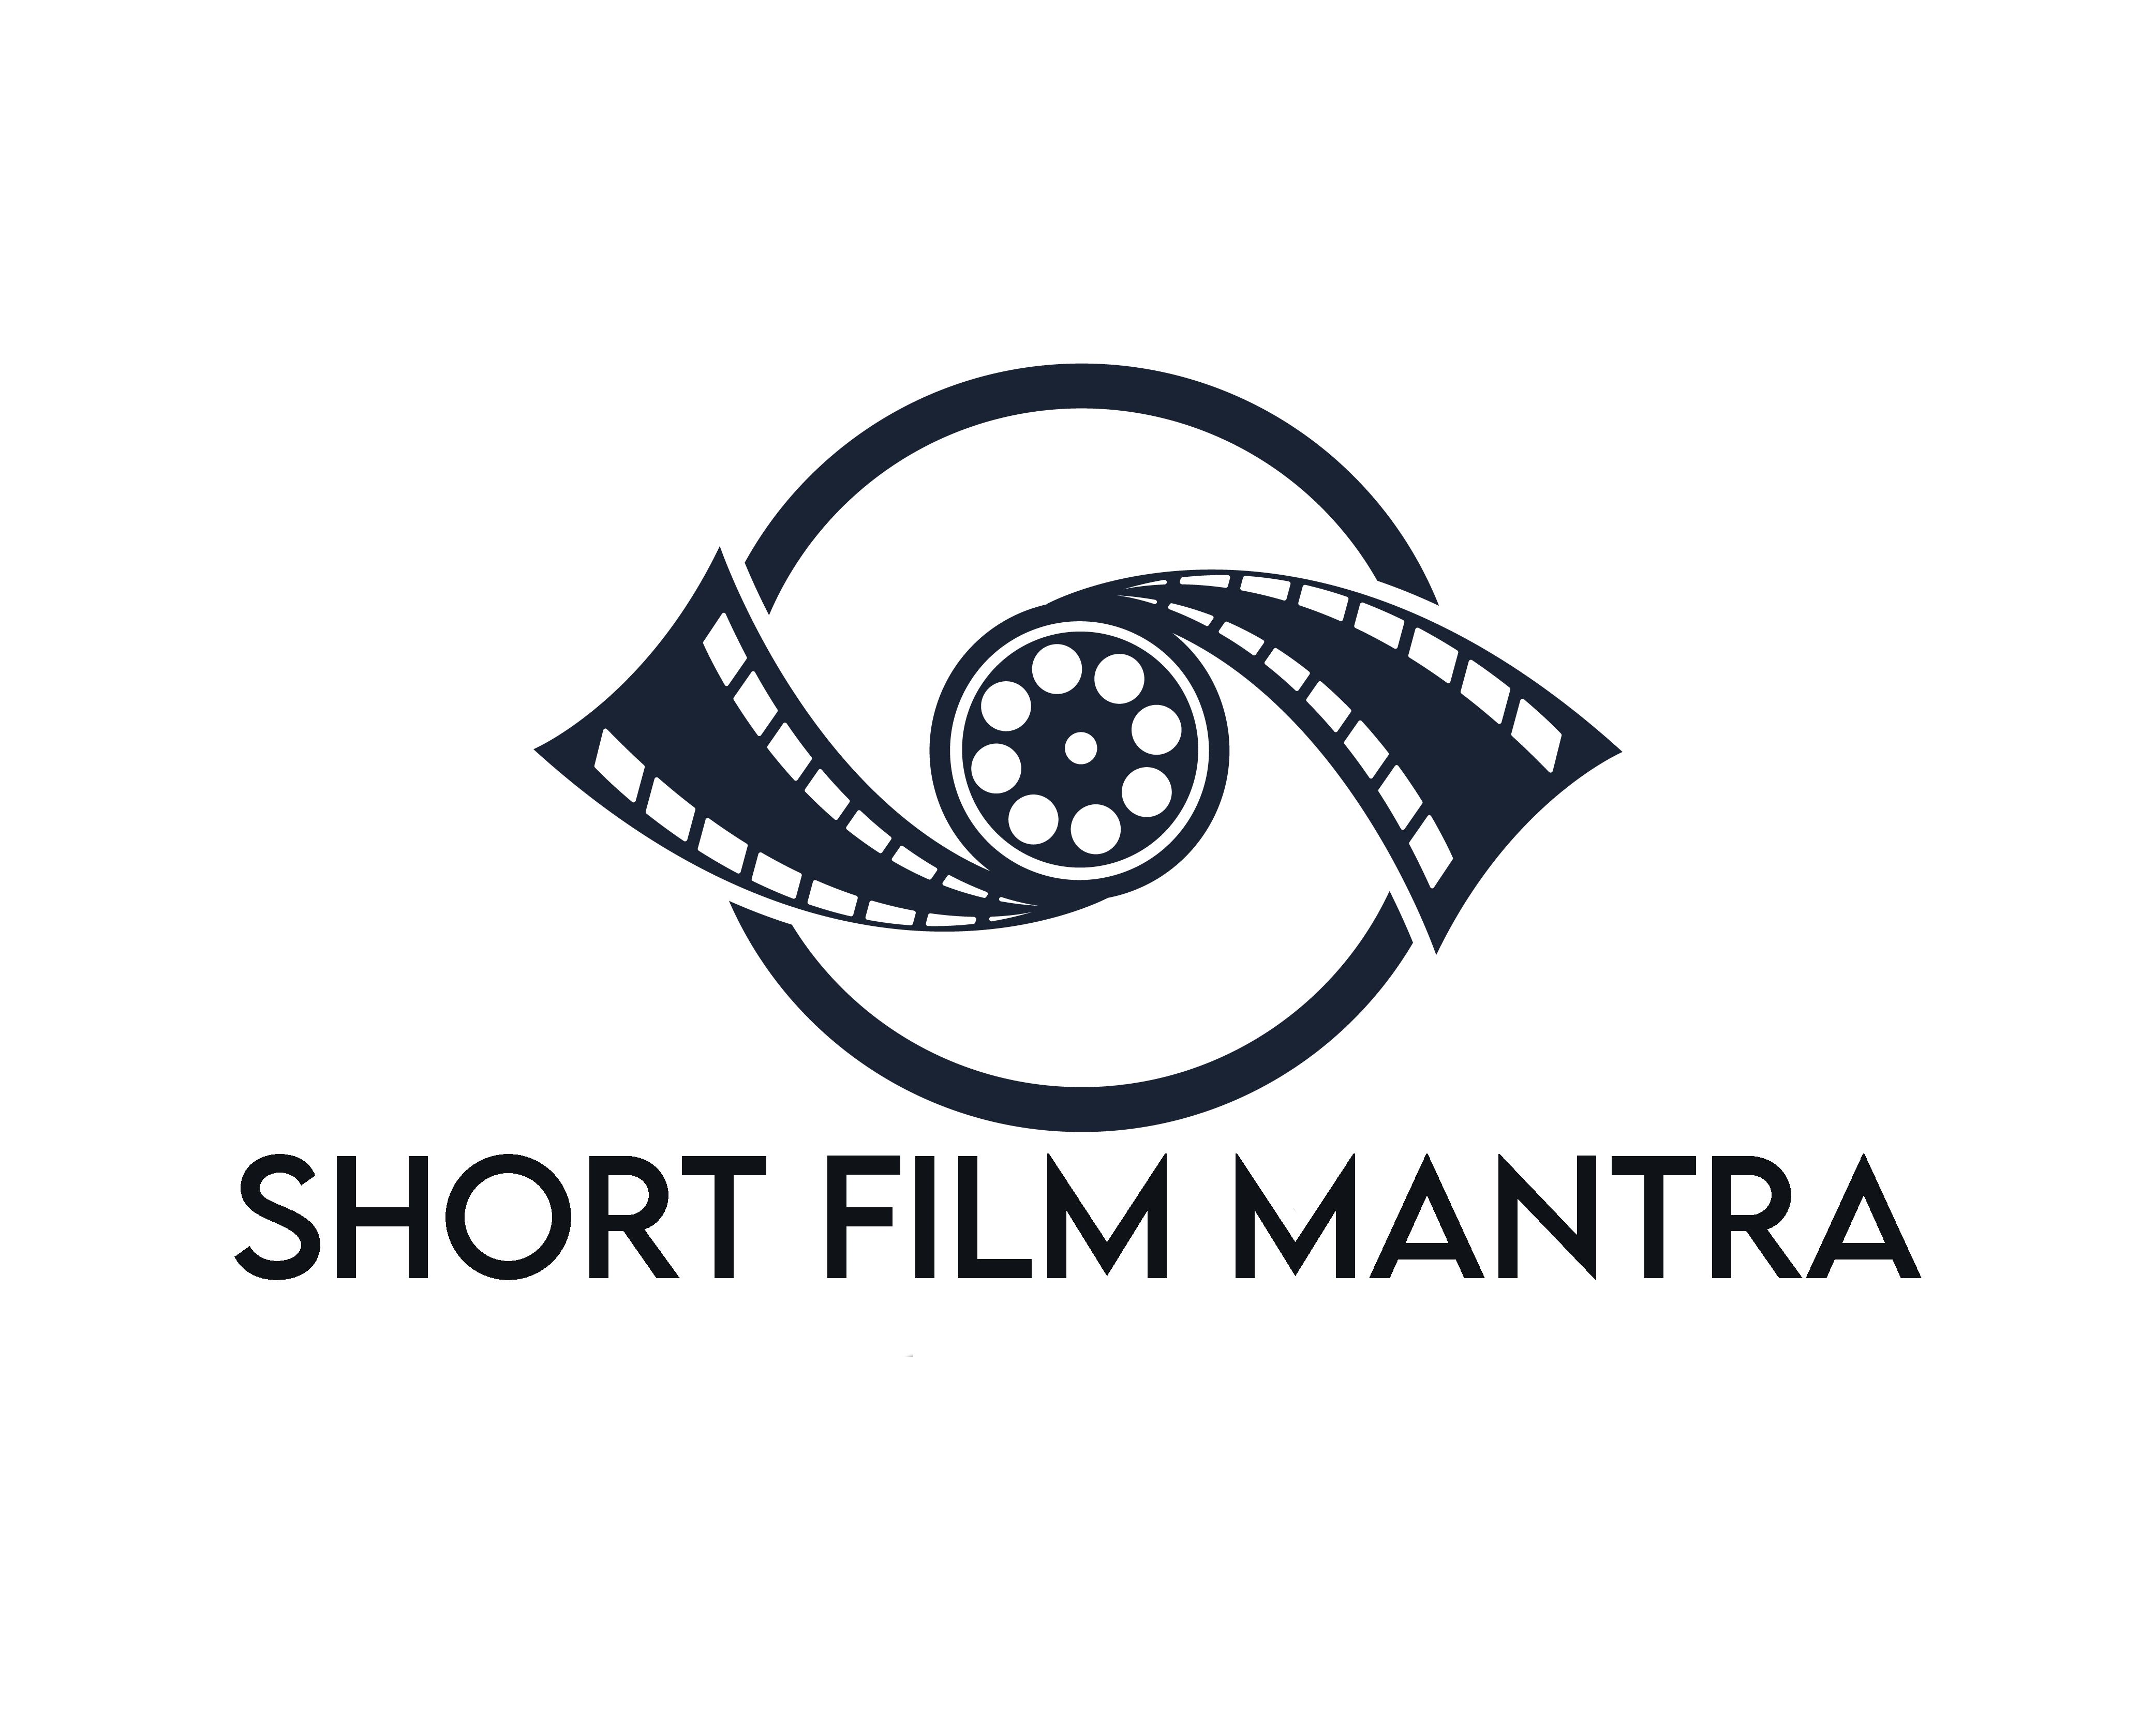 Short Film Mantra